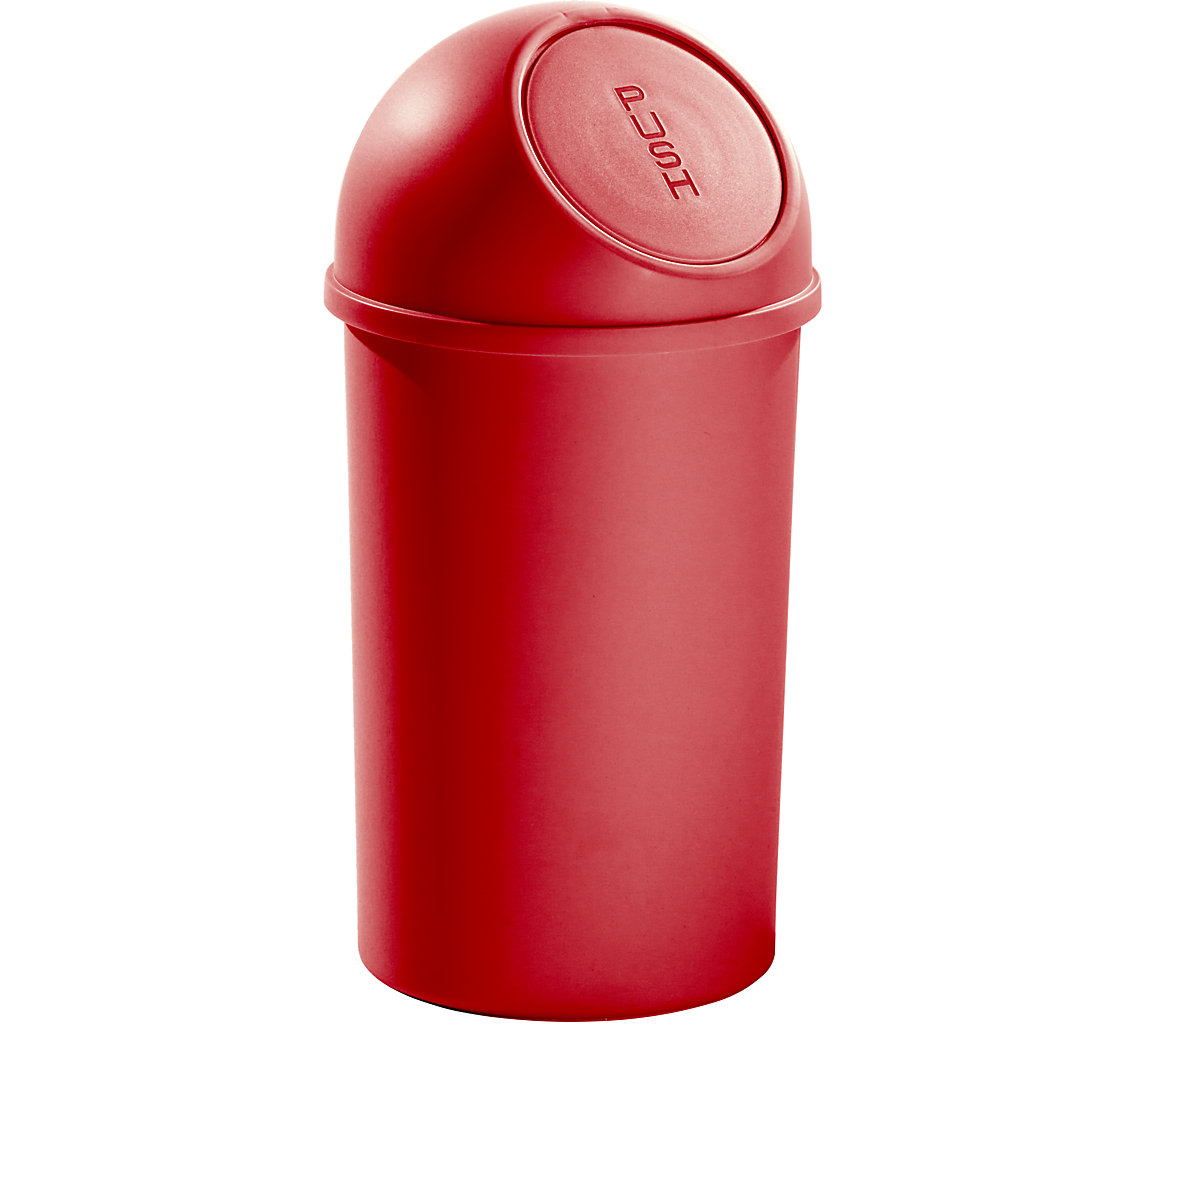 Poubelle à trappe en plastique – helit, capacité 25 l, lot de 3, h x Ø 615 x 315 mm, rouge-5